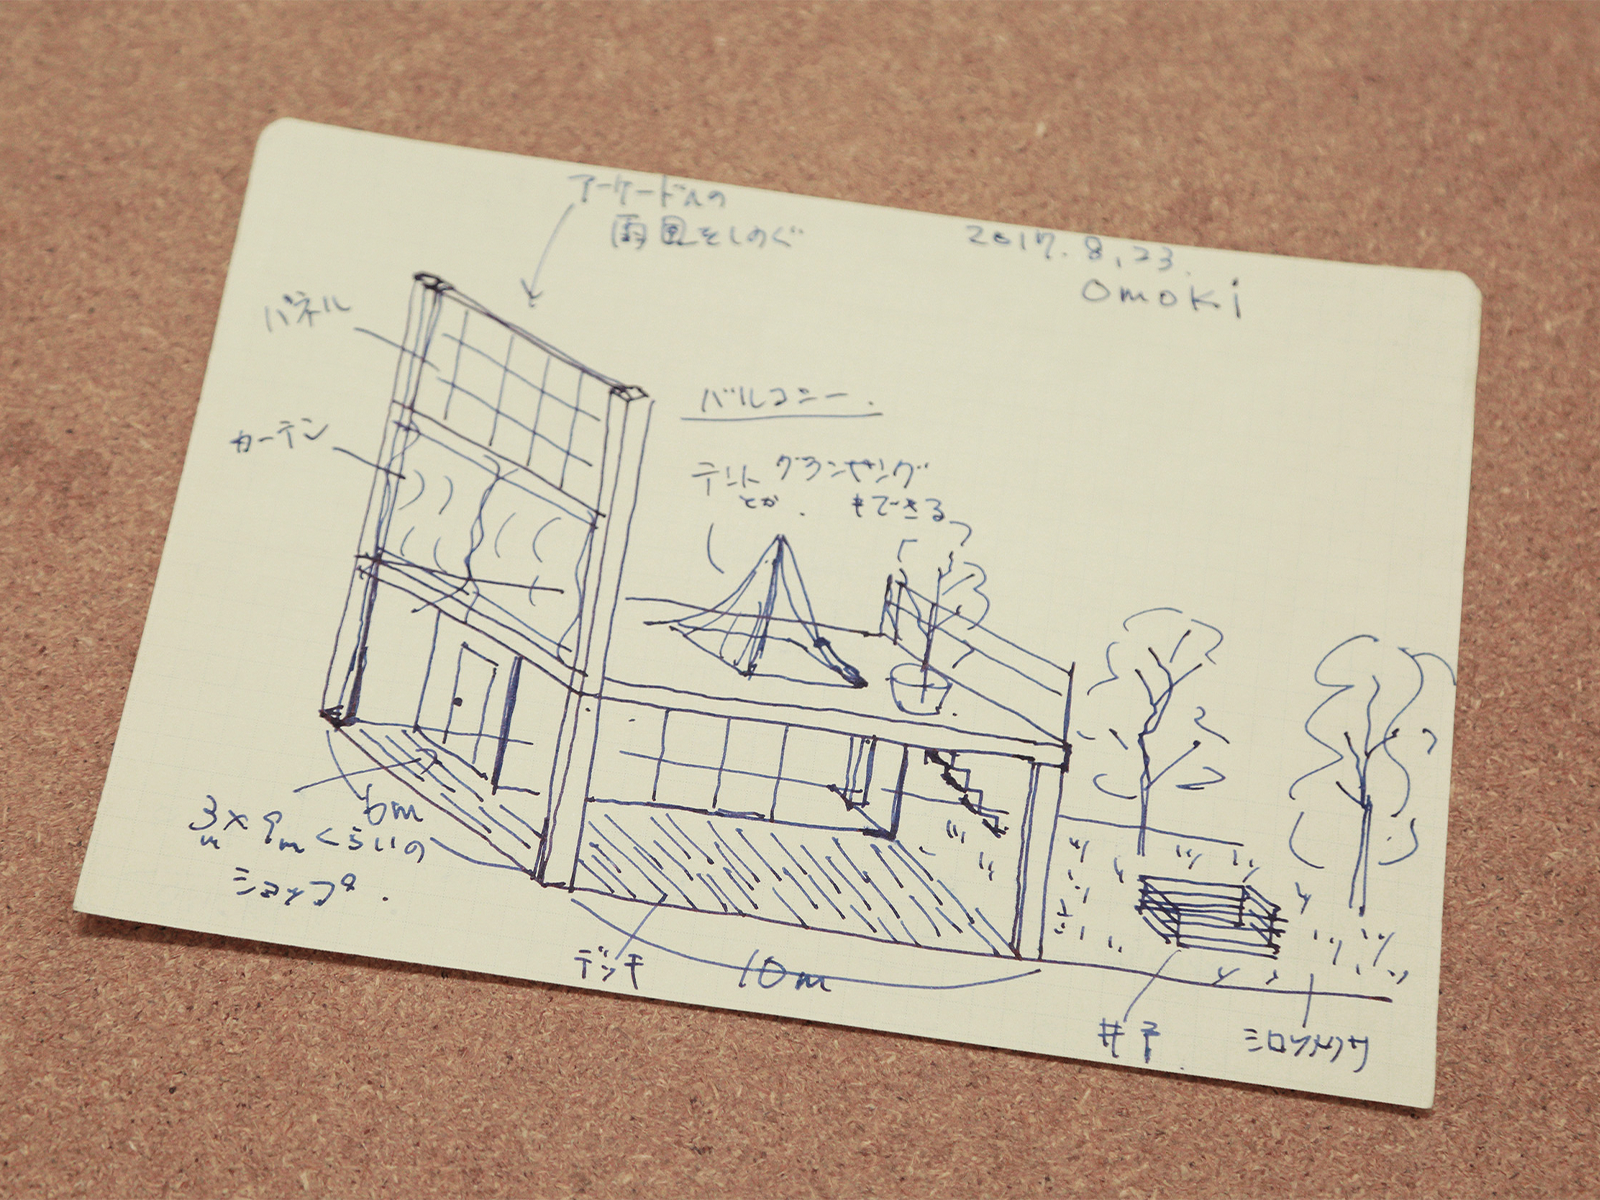 面木さんが、現在の空間づくりの際に描いたスケッチ。